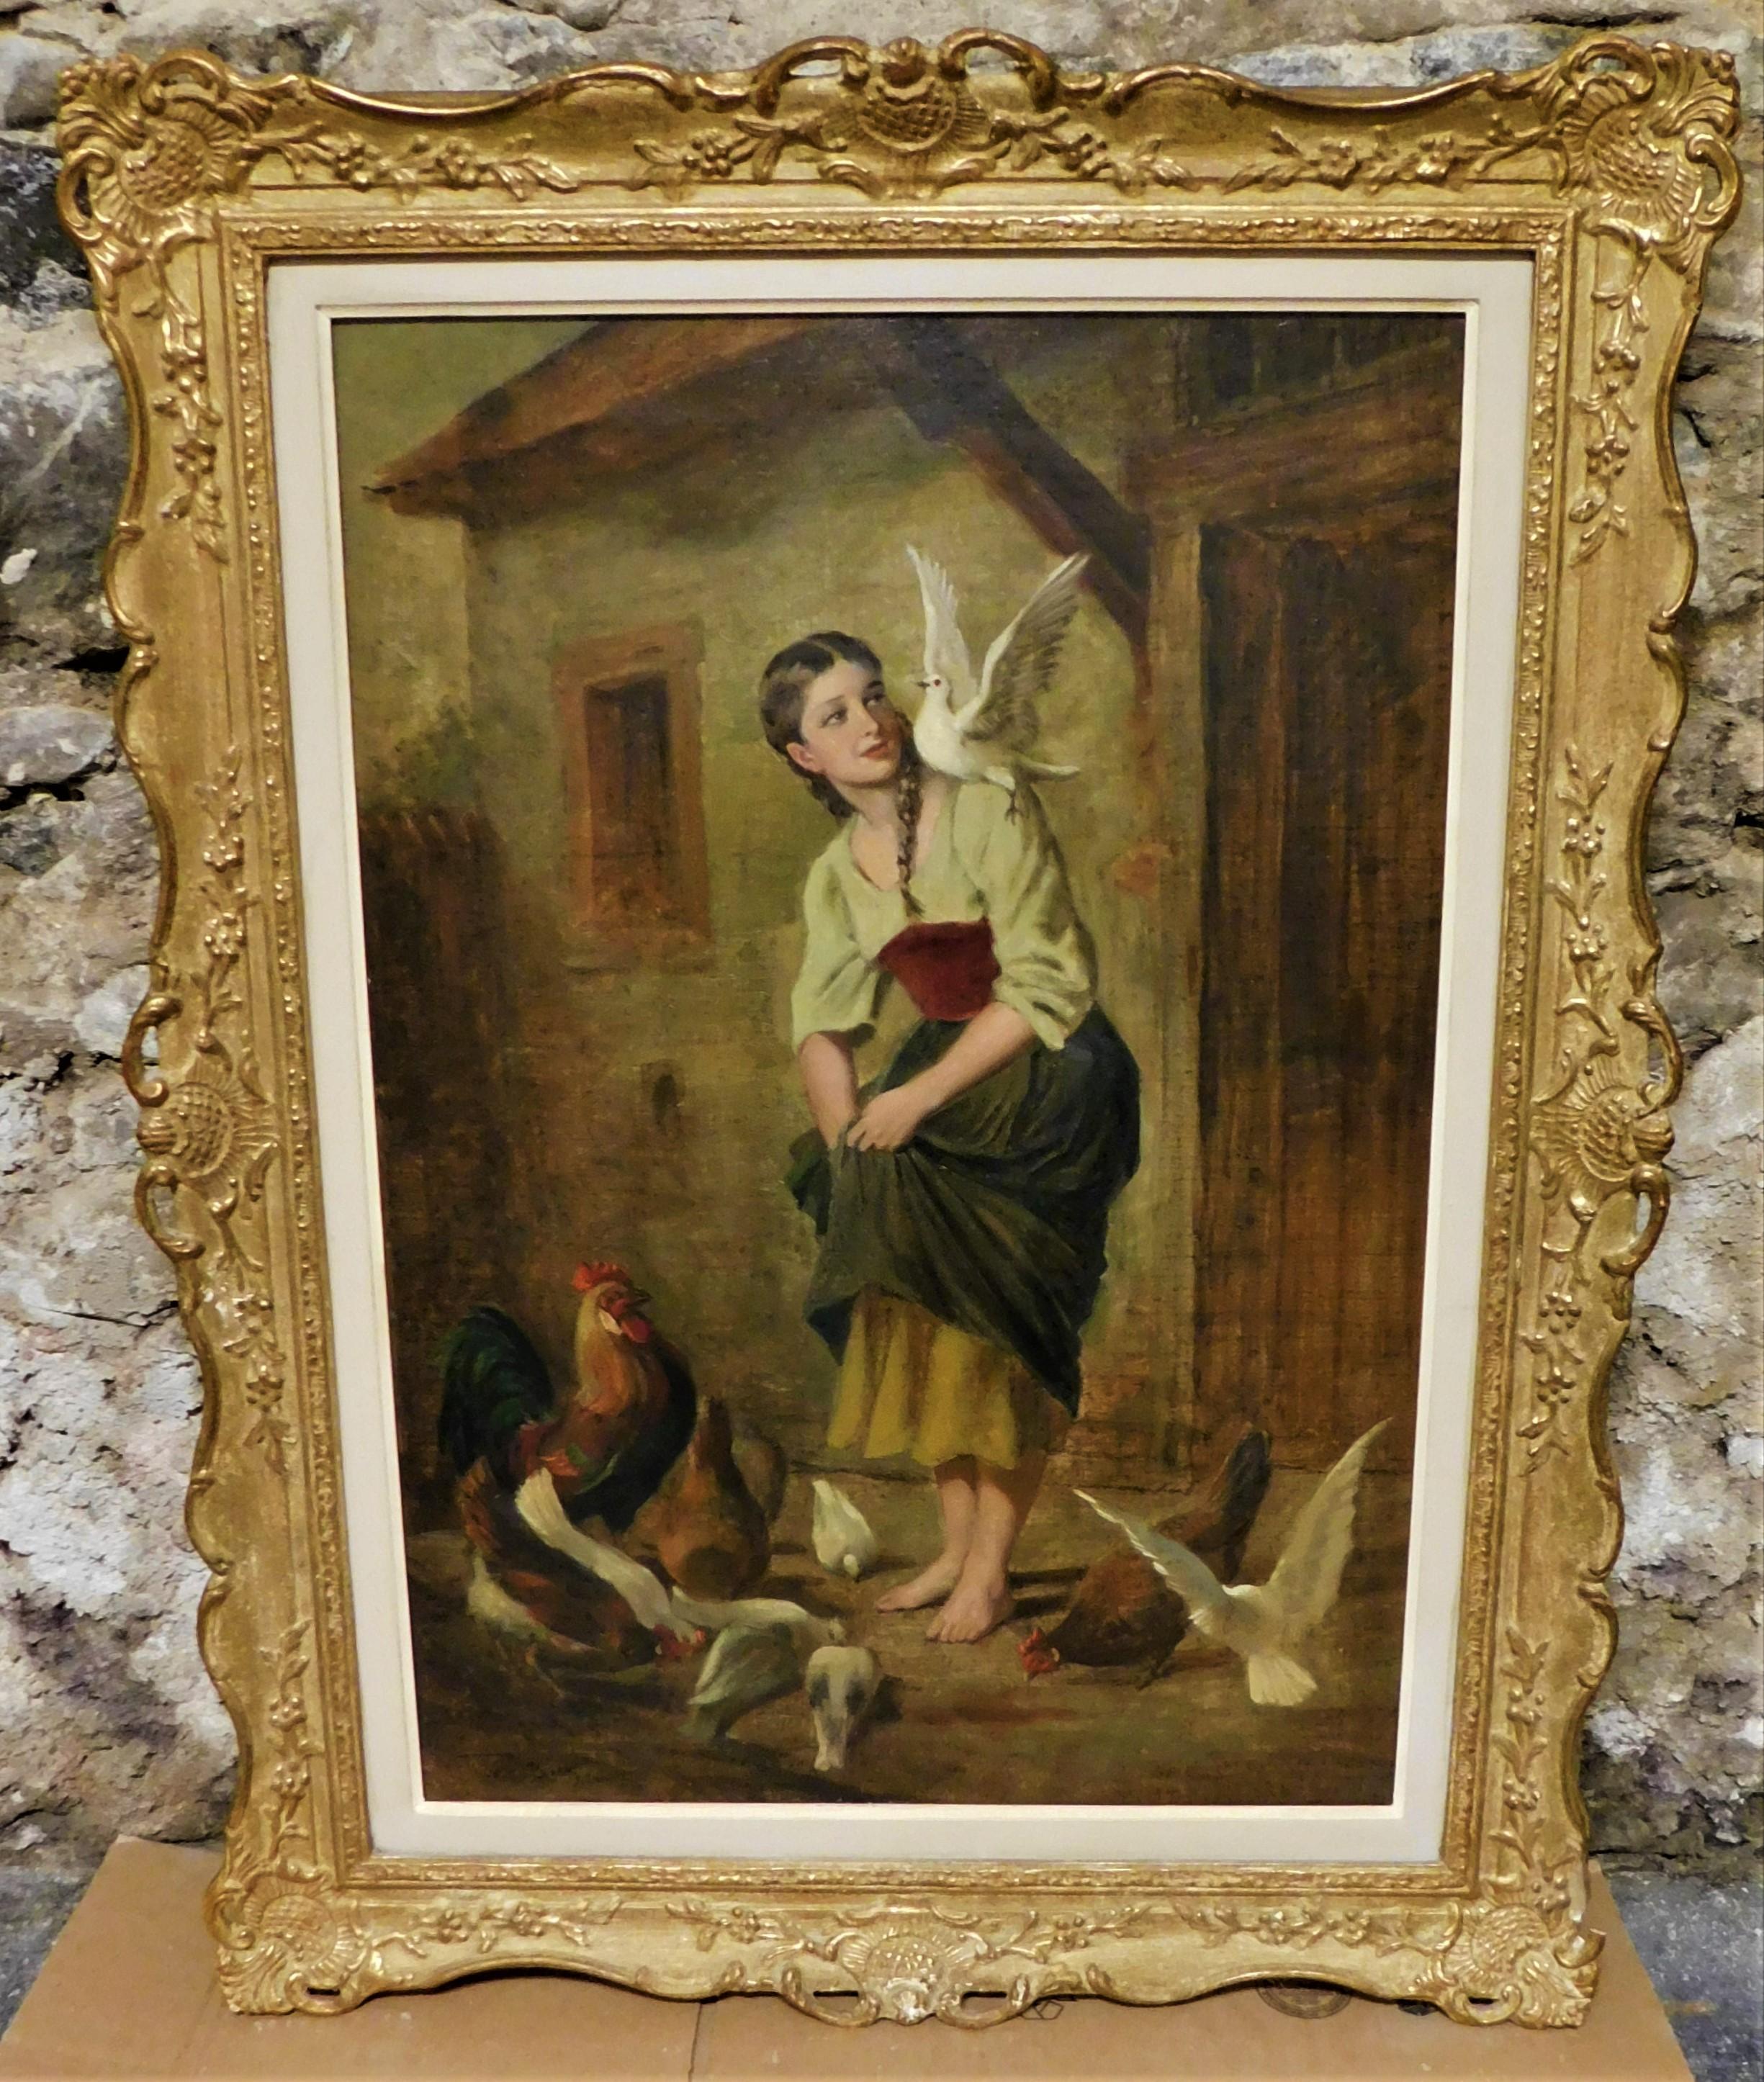 Deutscher Künstler Theodor von der Beek (1838-1921), Öl auf Leinwand, um 1880, in einem verzierten Goldrahmen.
Die tatsächliche Größe des Gemäldes ist 28,5 Zoll hoch und 20 Zoll breit und 1 Zoll tief. 

Theodor von der Beek (geboren am 21. März 1838